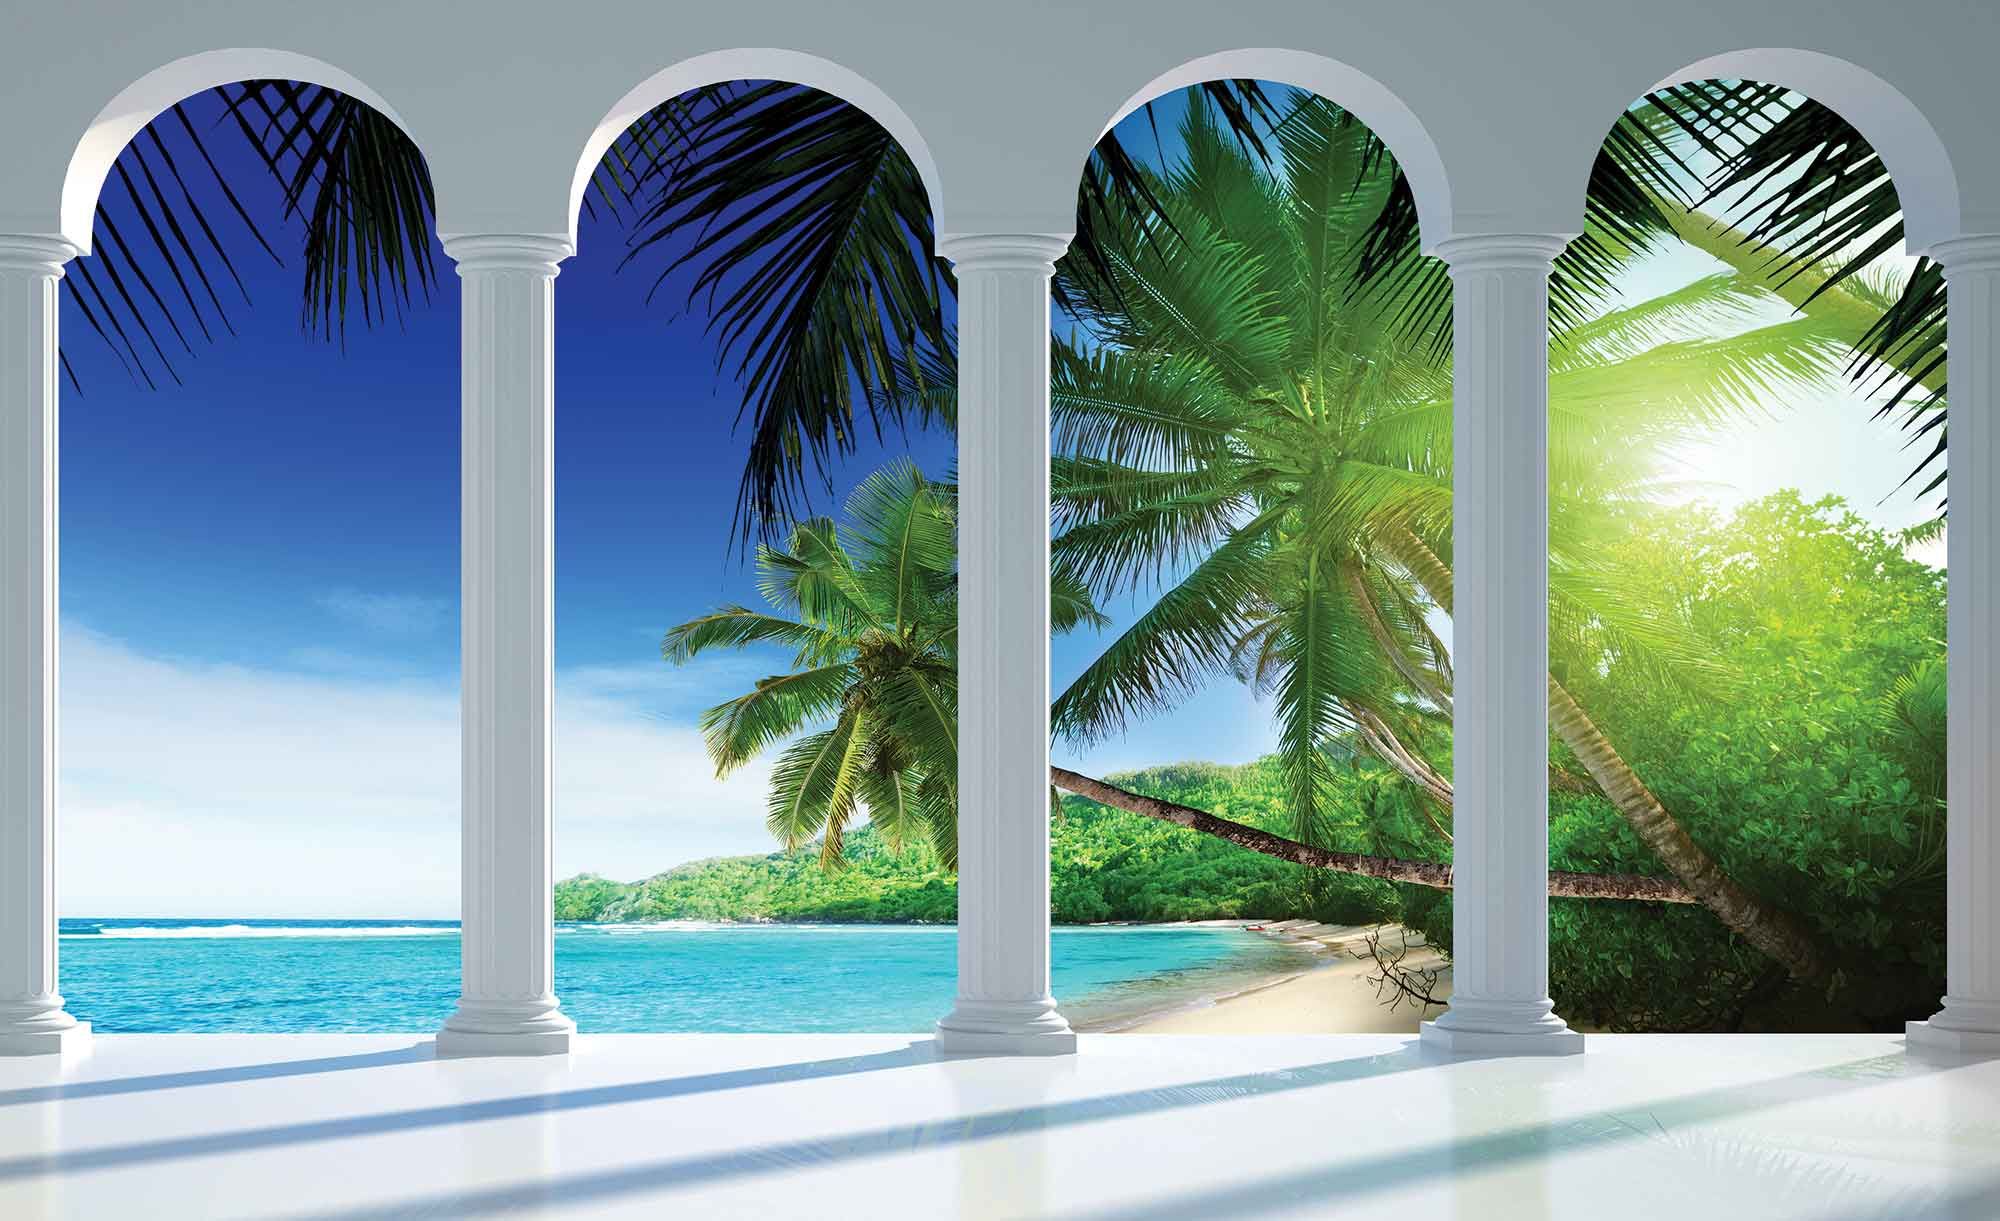 멜리 네라 사진 벽지,나무,자연 경관,야자수,카리브해,휴가